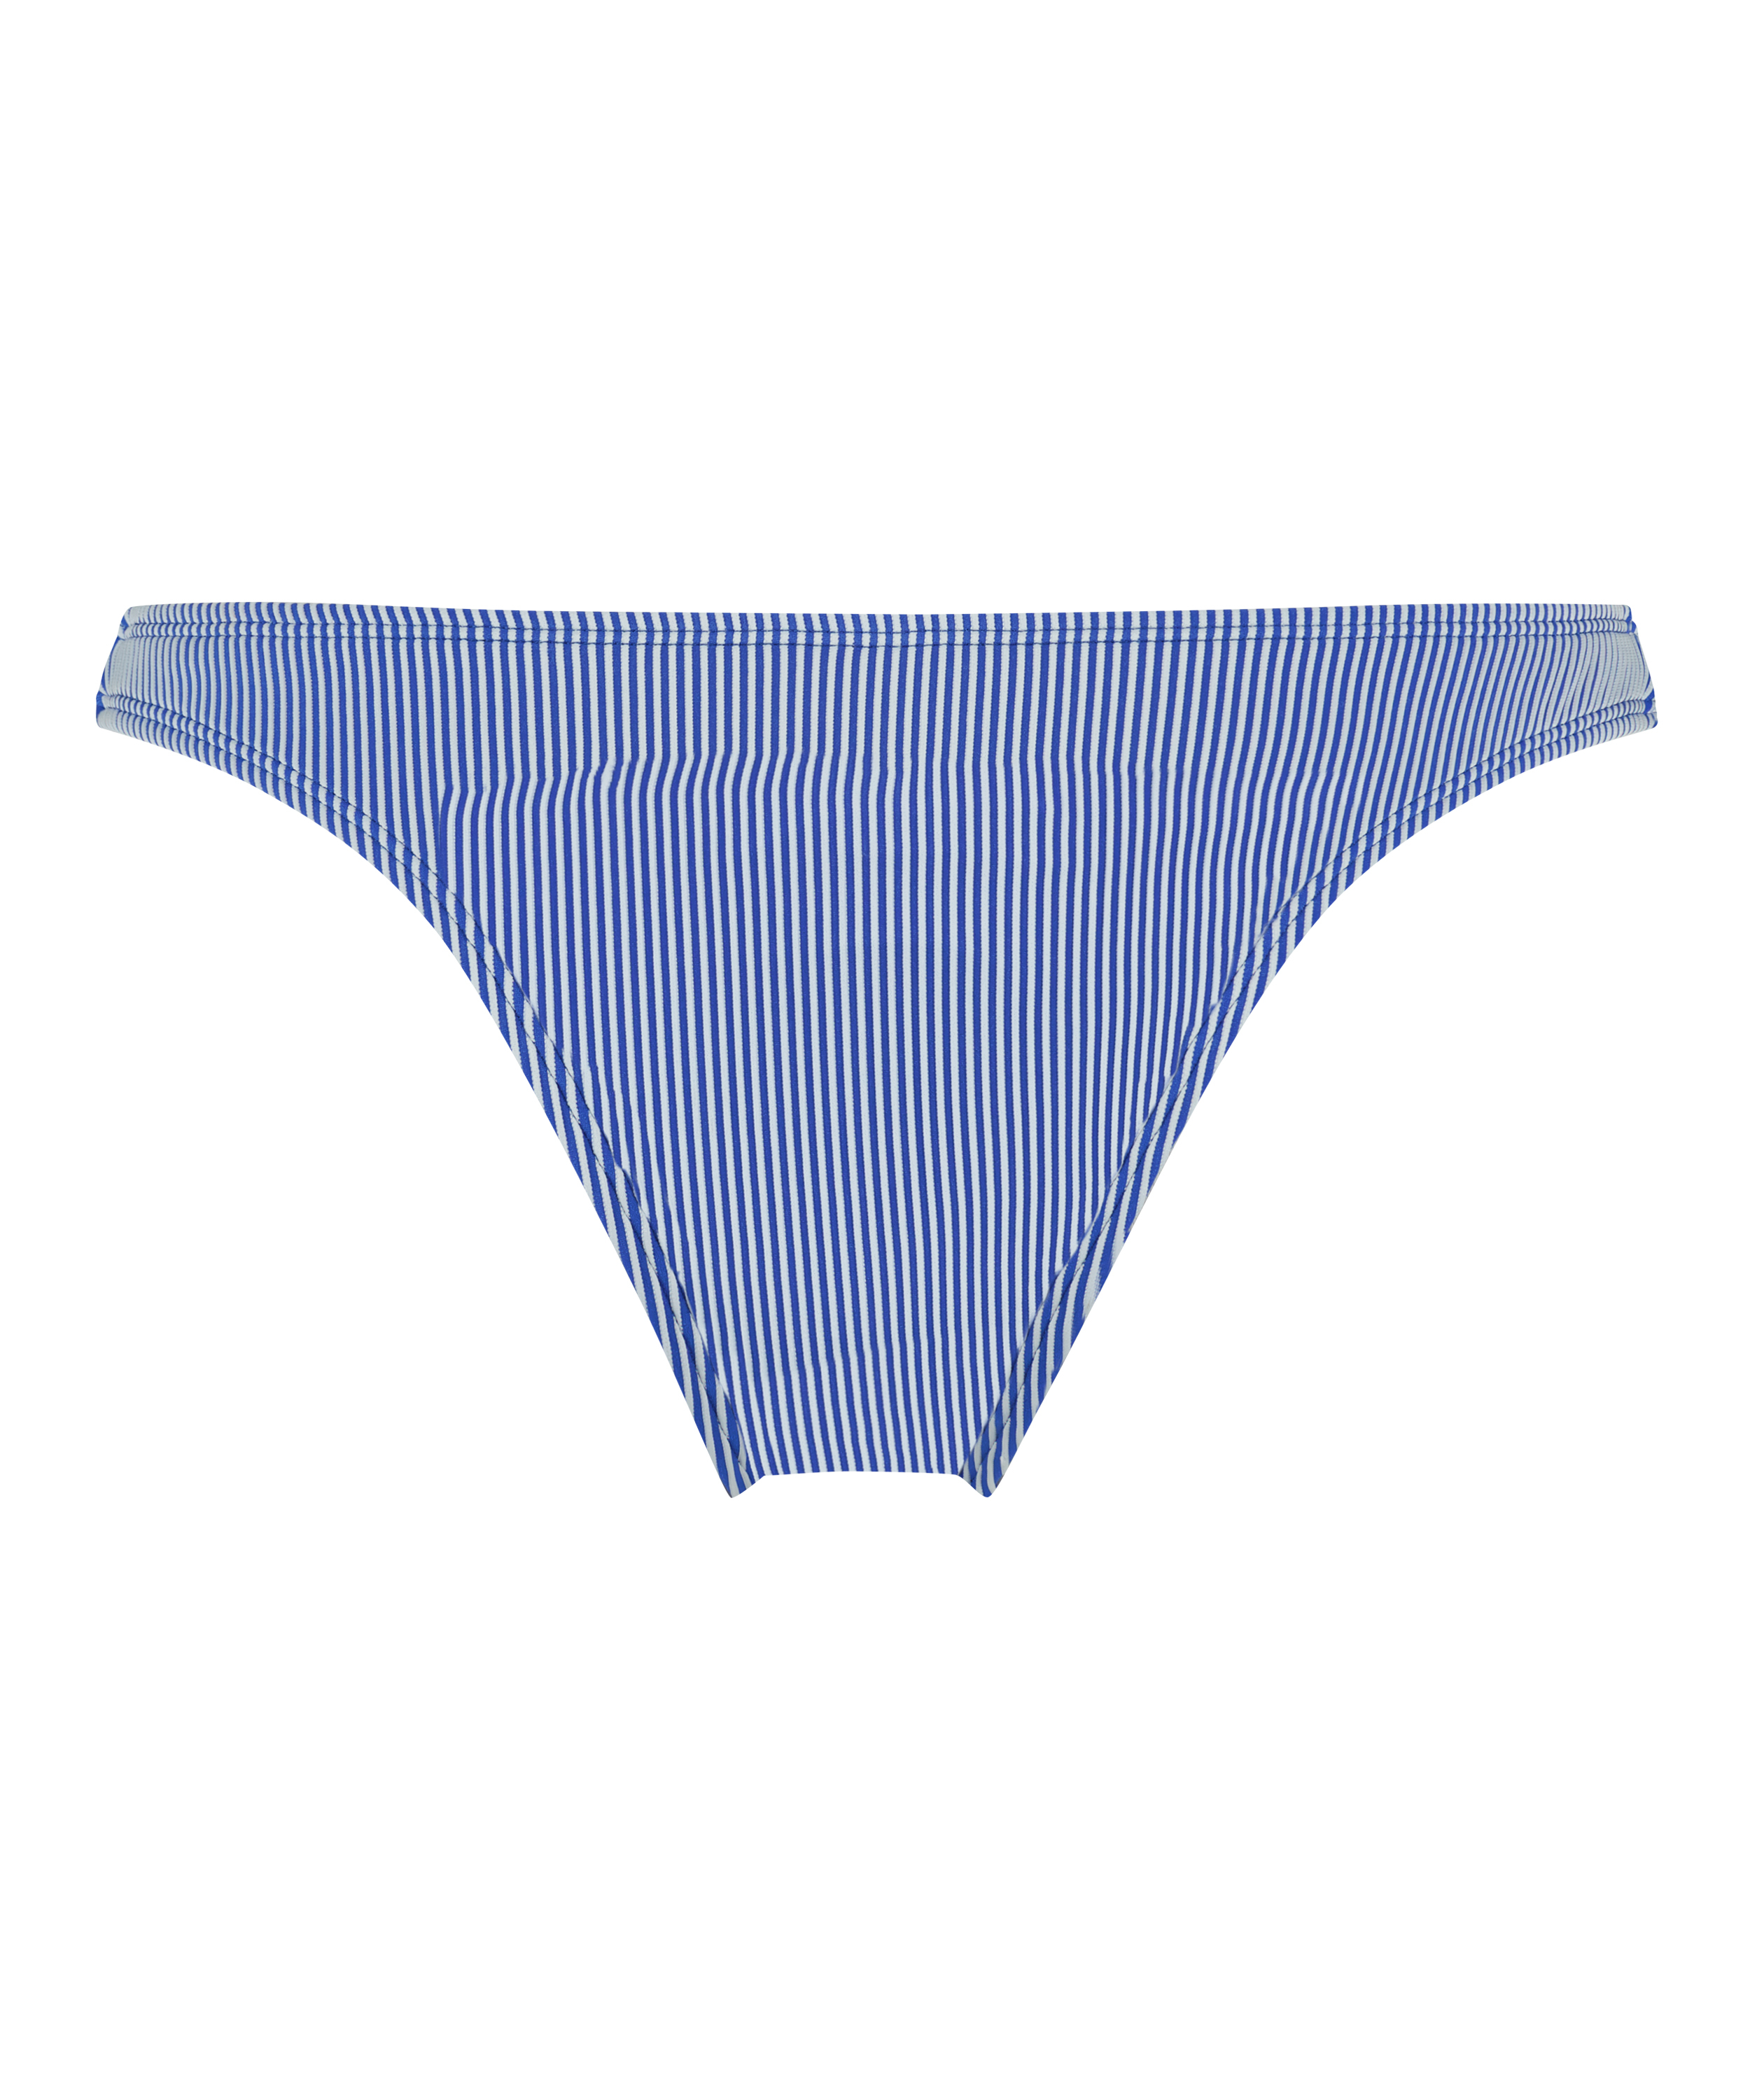 Bikini-Slip mit hohem Beinausschnitt Rib Fiji, Blau, main